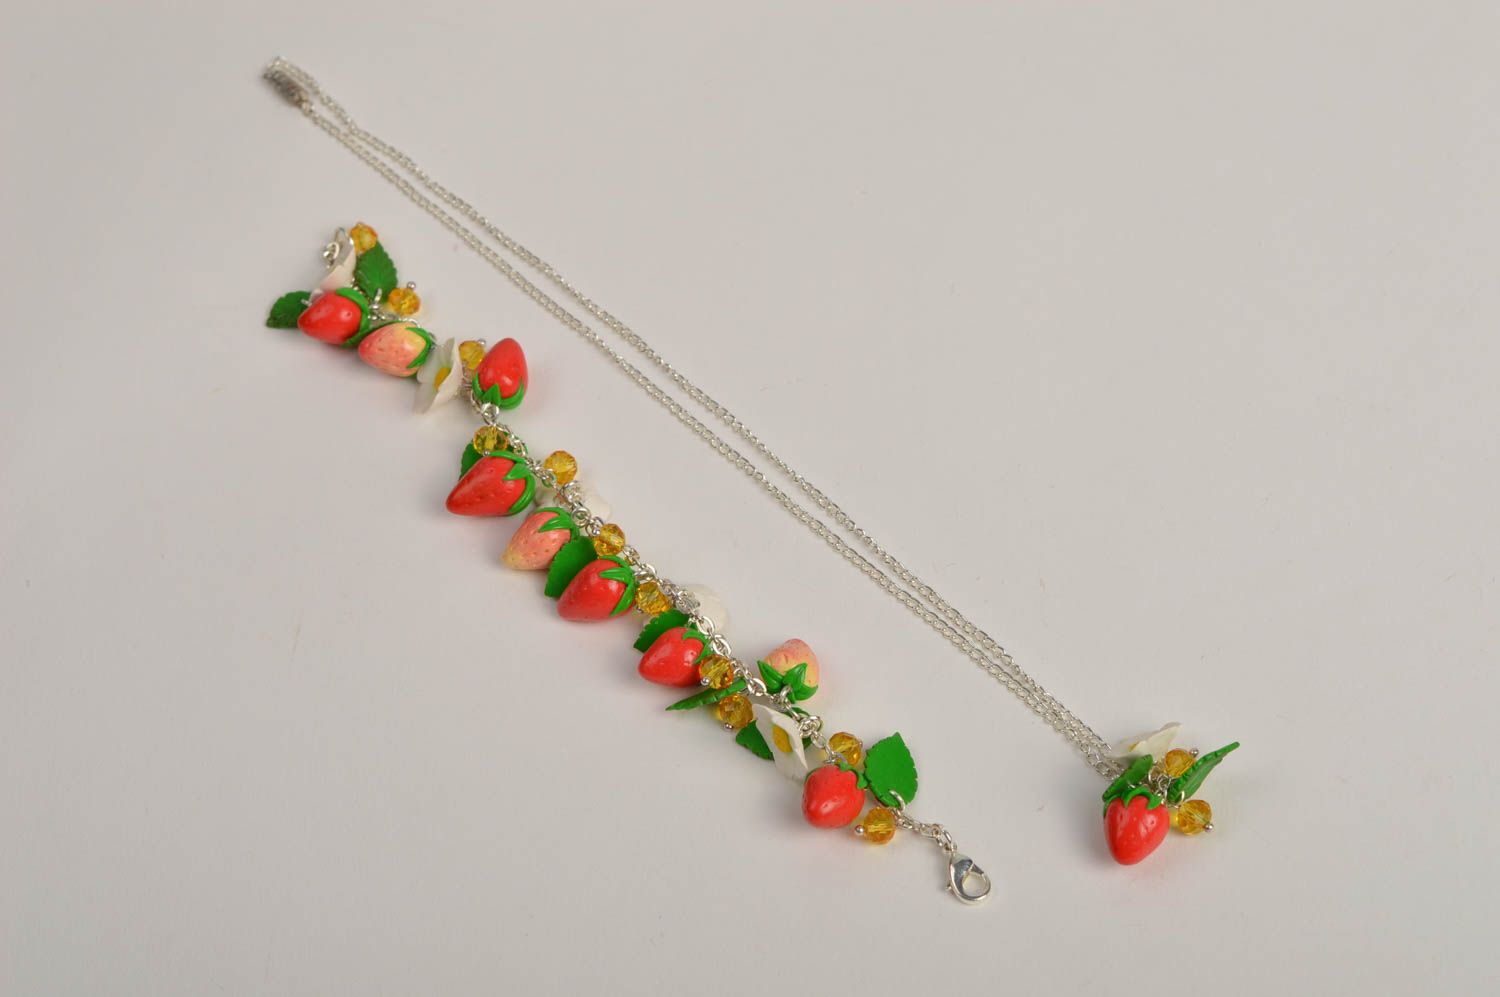 Handmade wrist bracelet necklace pendant polymer clay strawberry jewelry photo 3